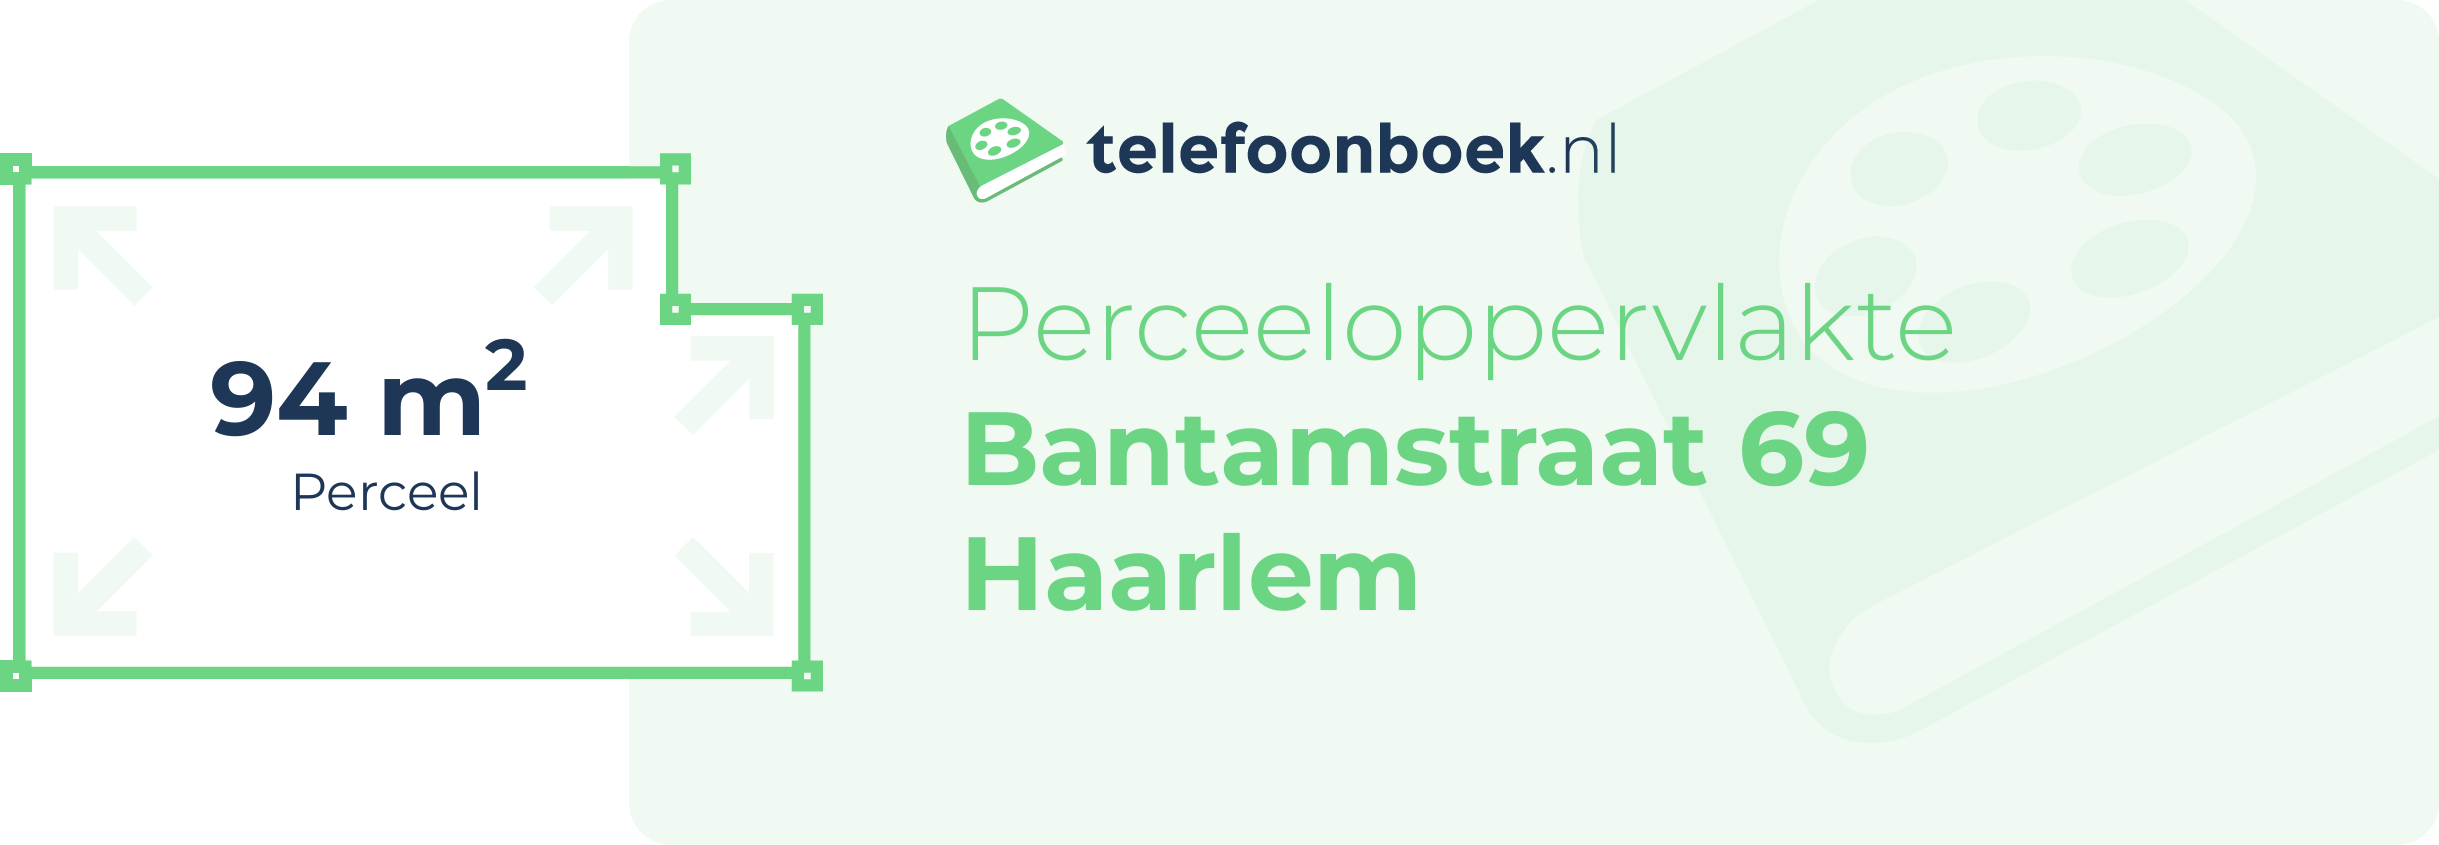 Perceeloppervlakte Bantamstraat 69 Haarlem